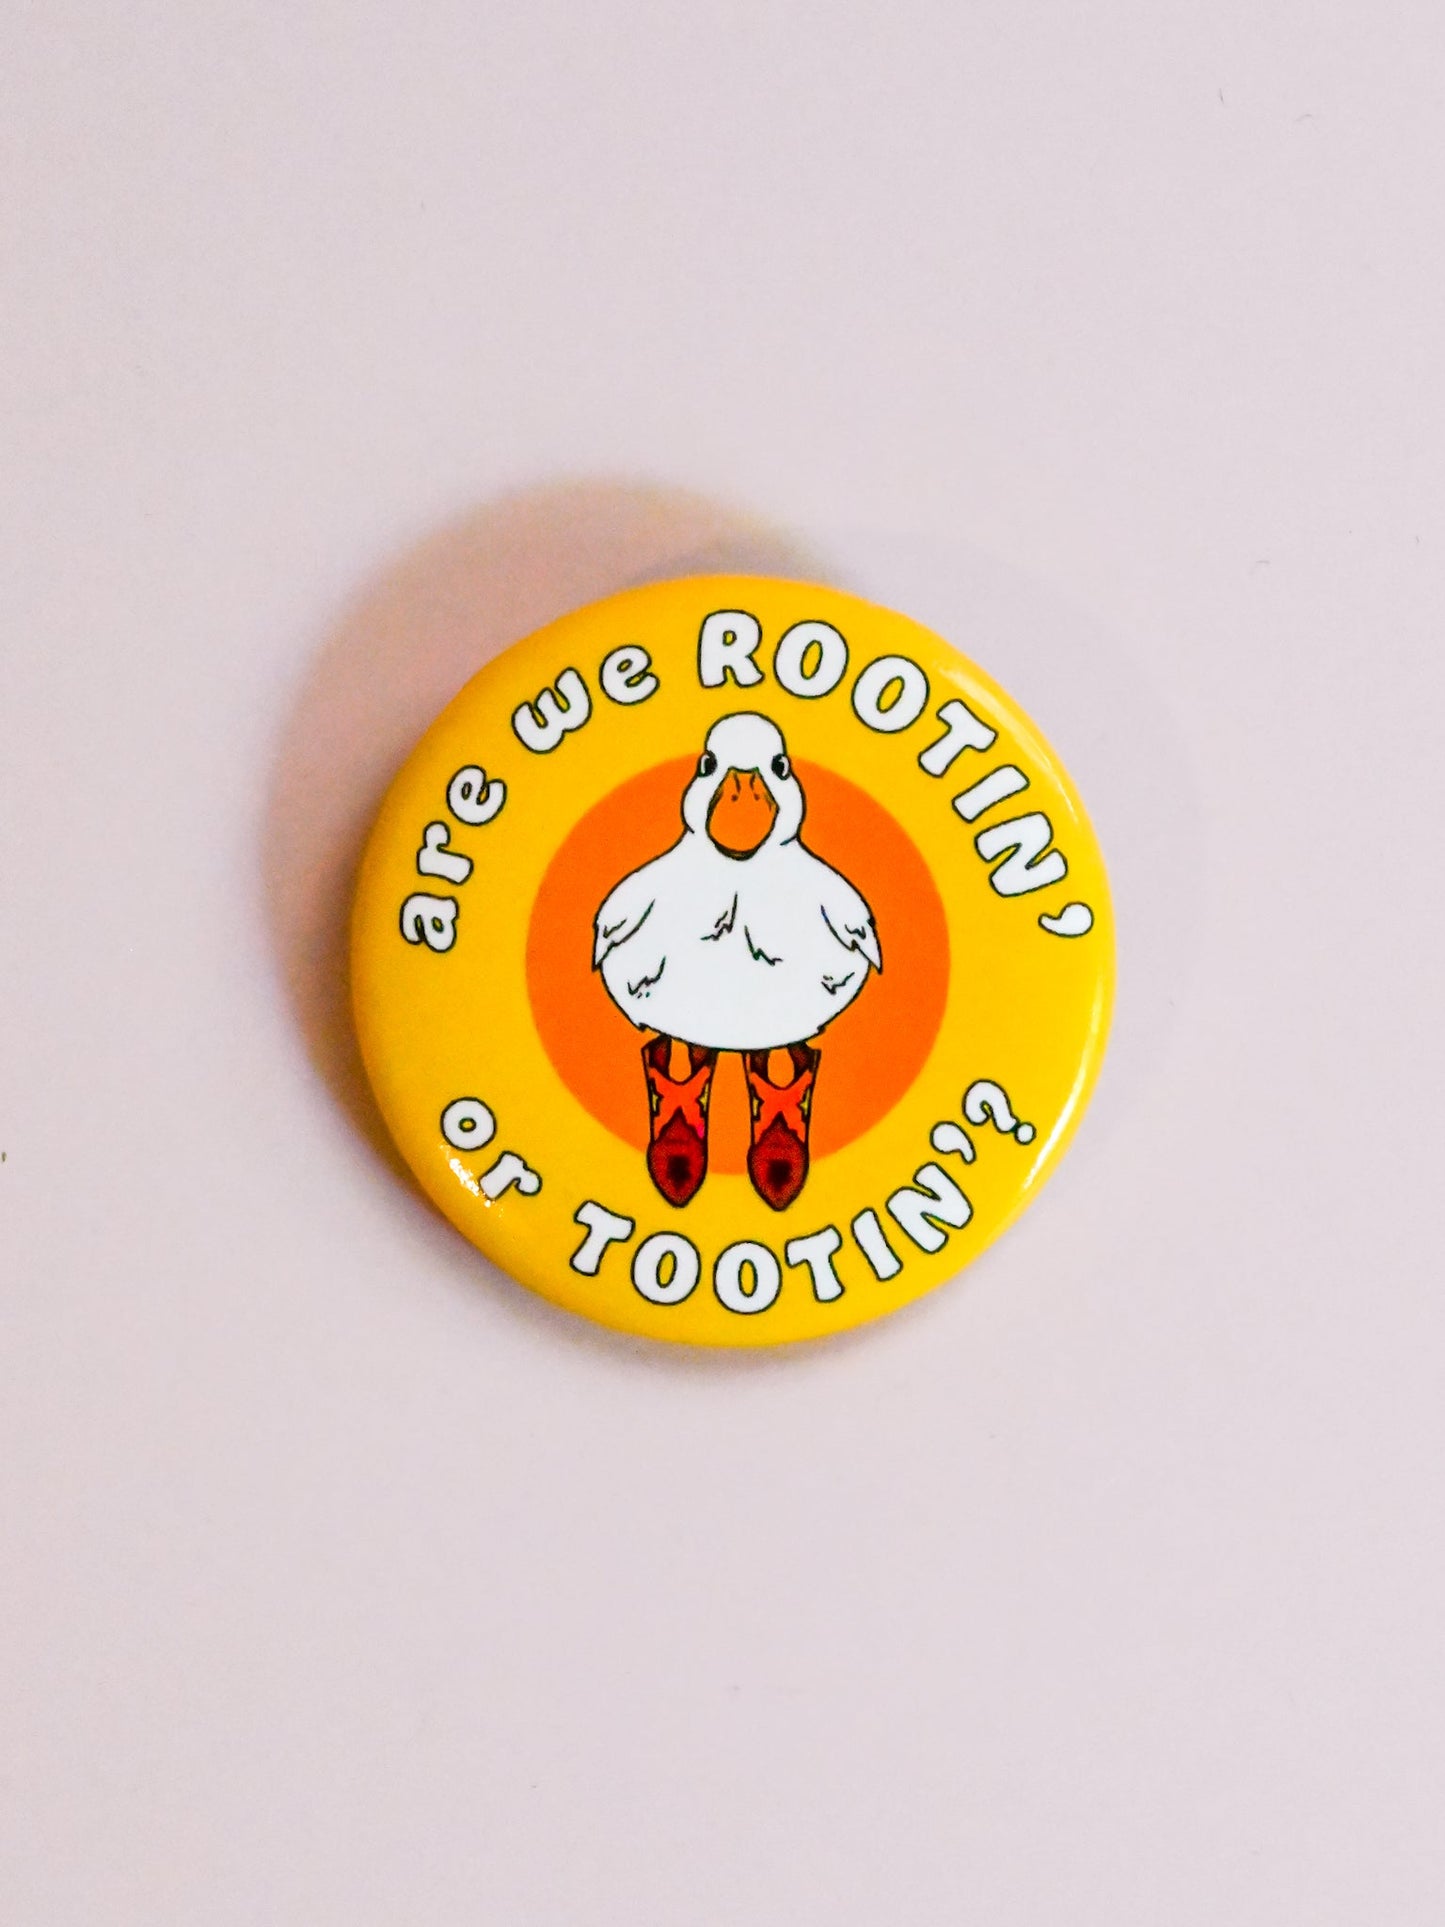 Rootin’ Tootin’ Pin Button - Cheeky Art Studio-allison thompson-allisthompson-art